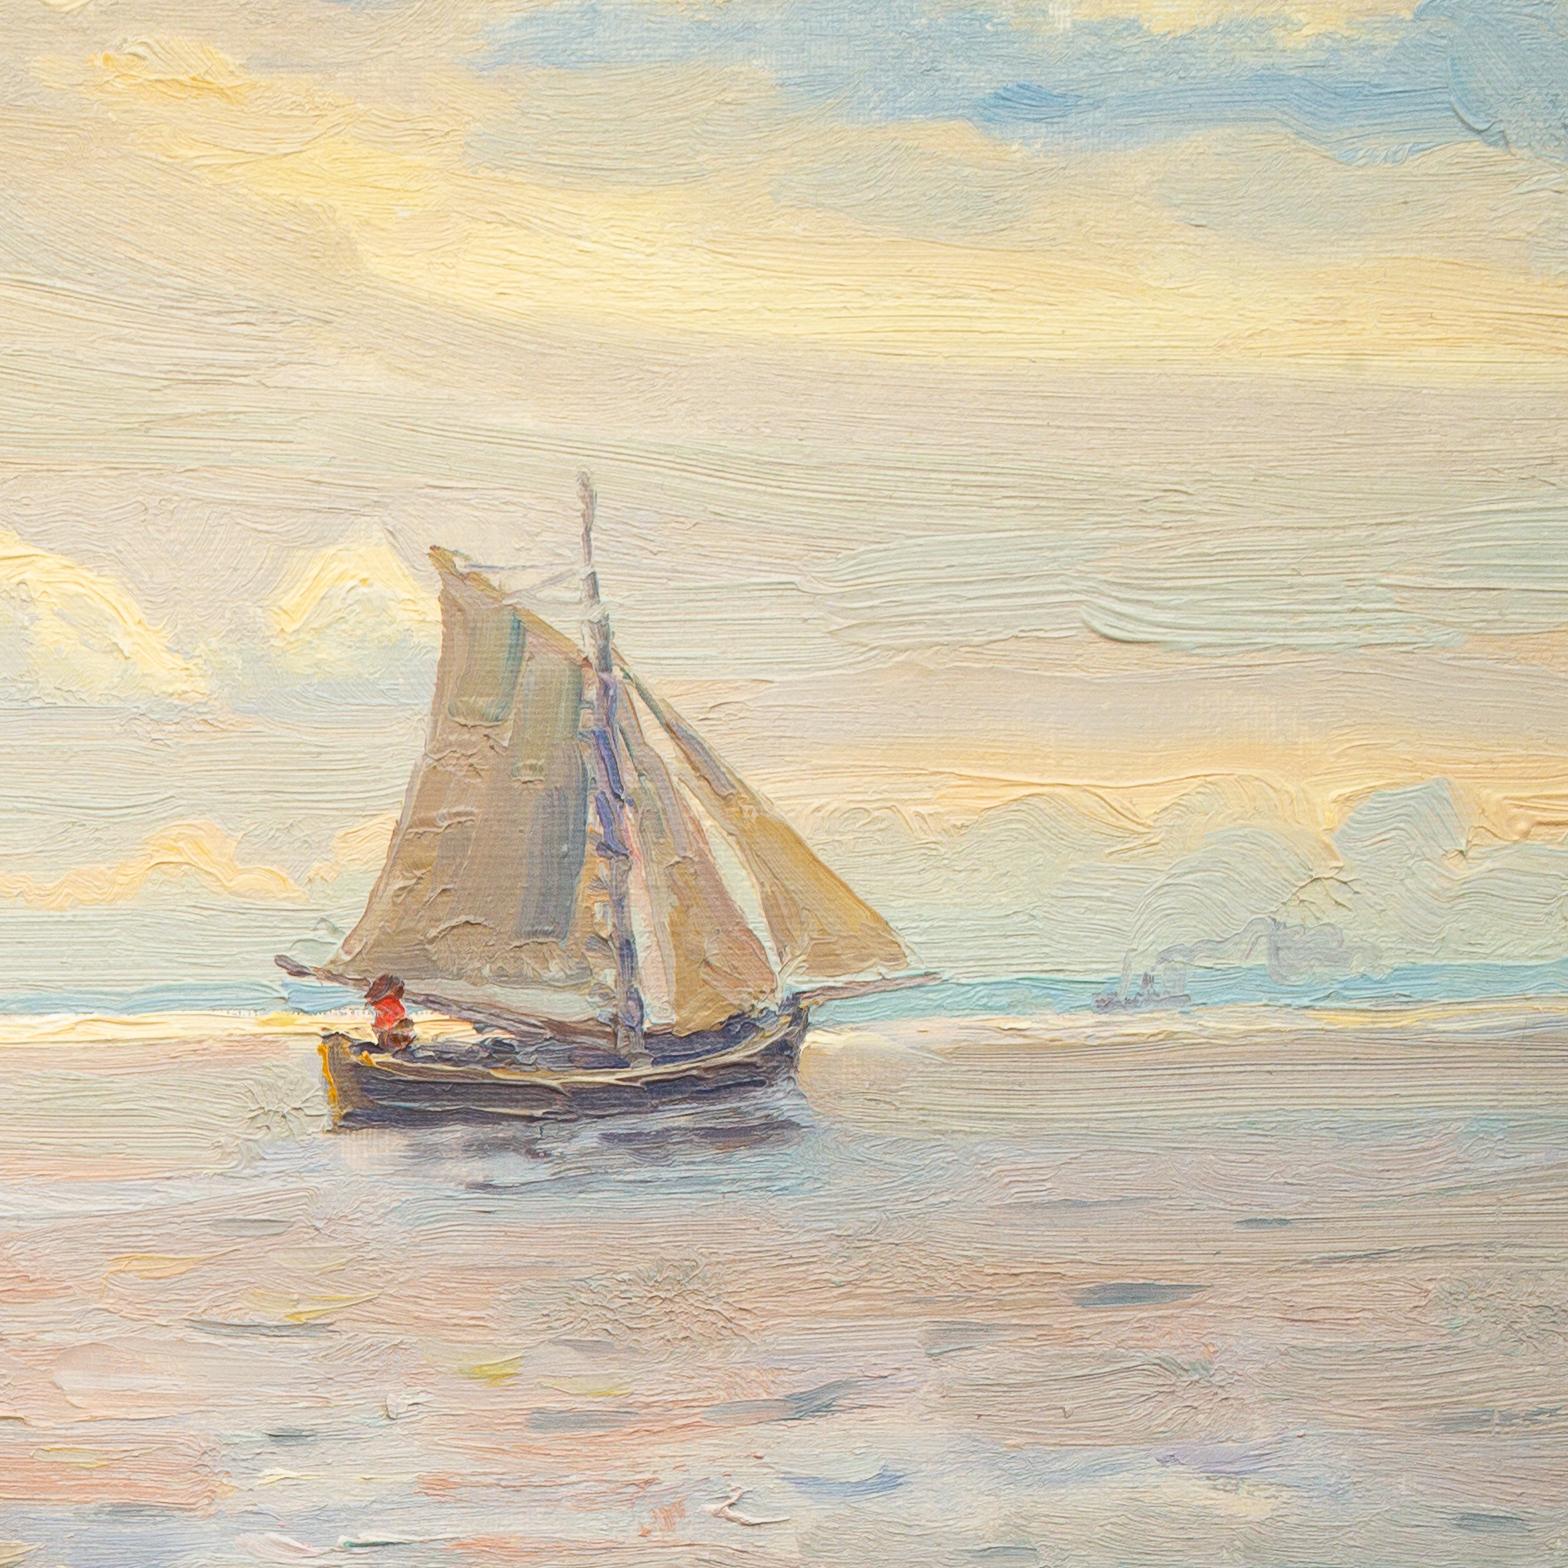 Segelboote im schwedischen Archipelago-Gemälde von Justus Lundegrd, Öl auf Leinwand (Impressionismus), Painting, von Justus Lundegård